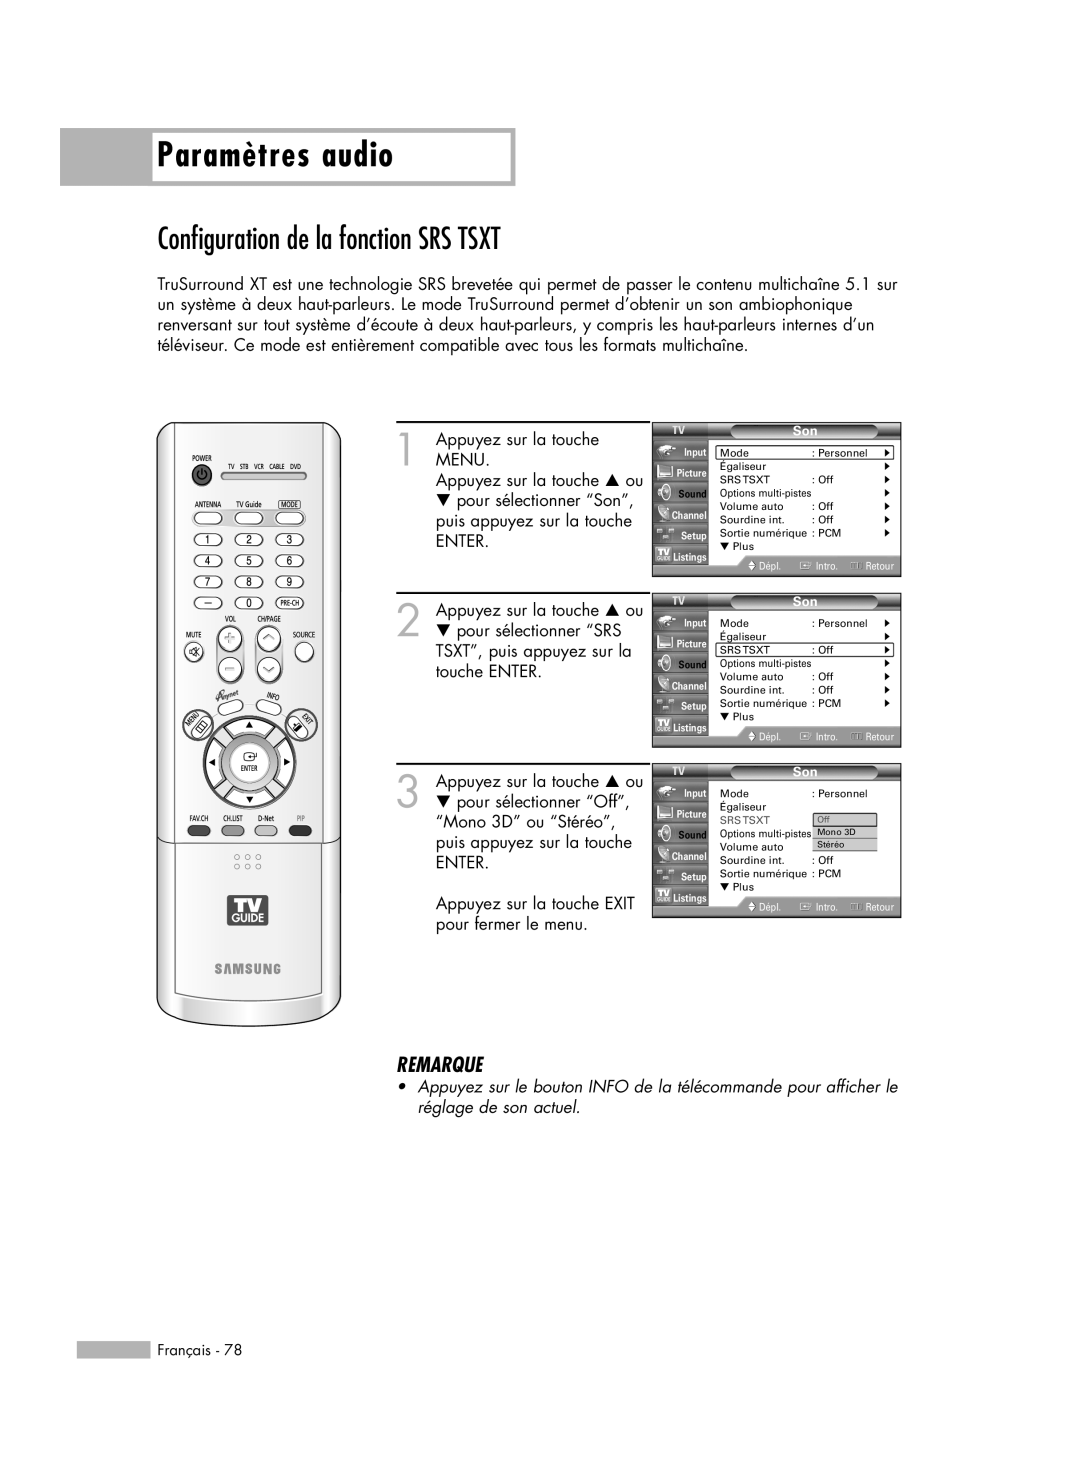 Samsung HL-R5678W, HL-R6178W, HL-R5078W manual Configuration de la fonction SRS TSXT, Paramètres audio, Remarque, Srs Tsxt 